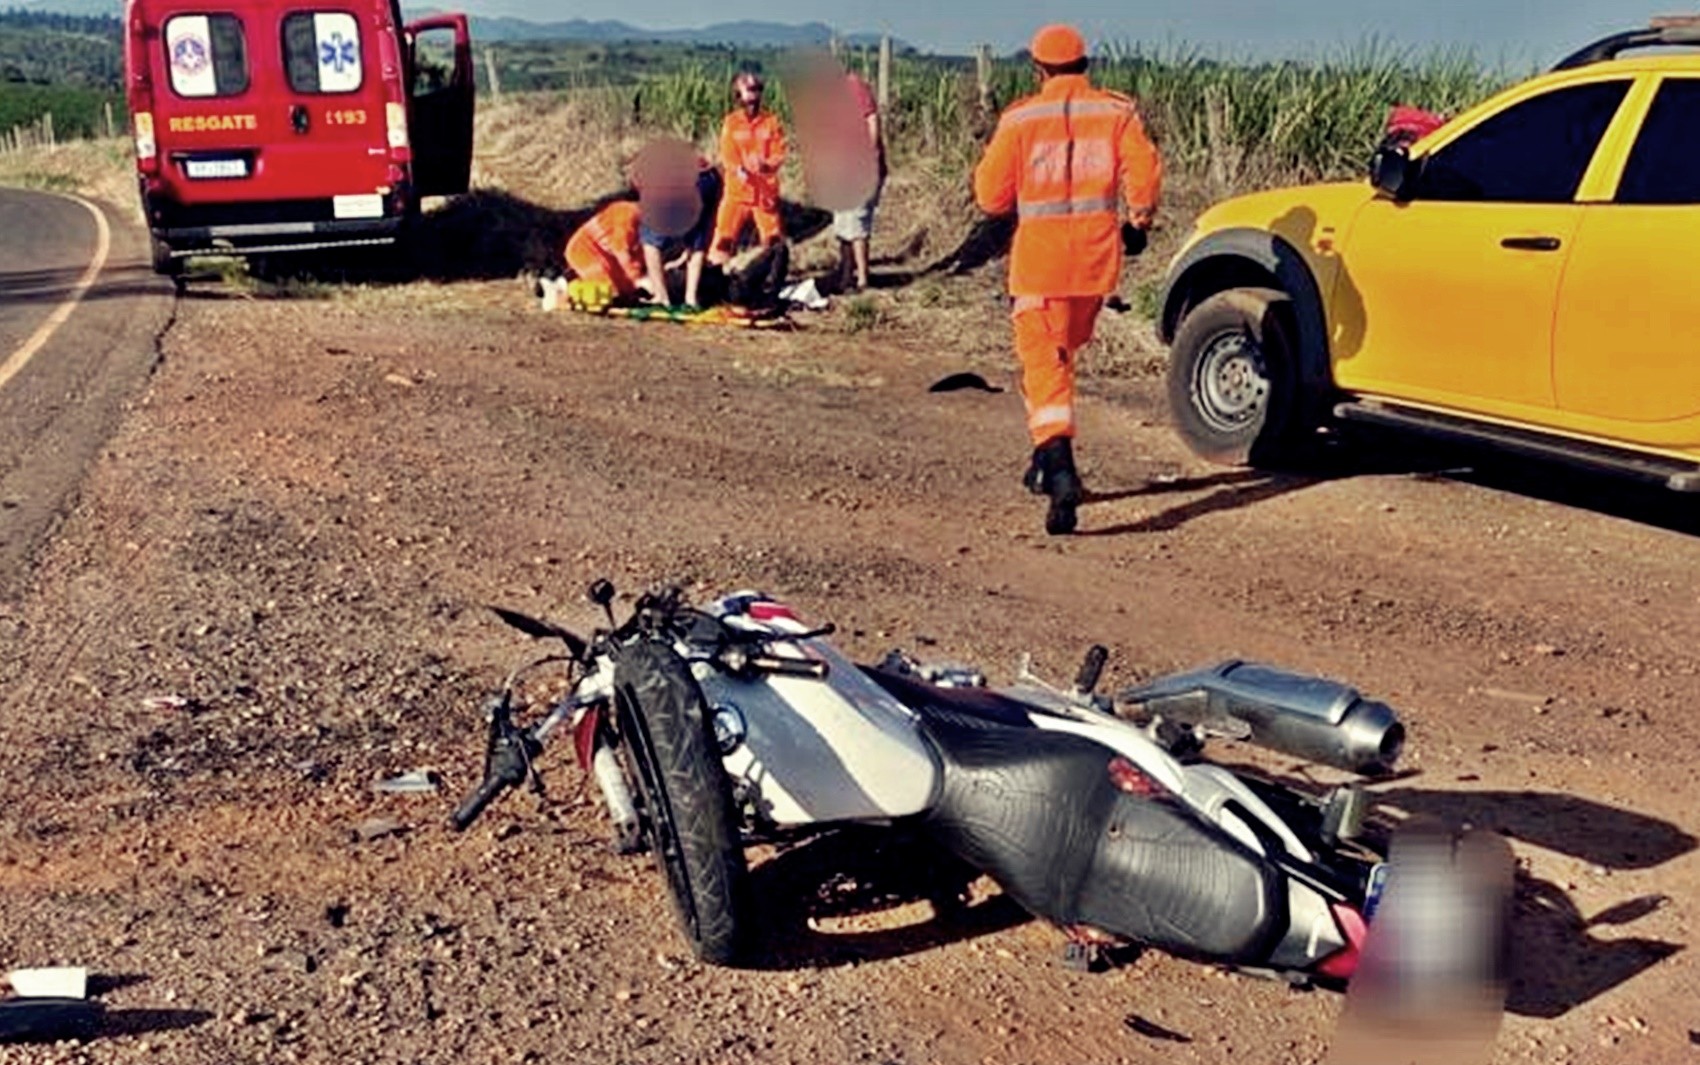 Motociclista é arremessada e fica em estado grave após batida com caminhonete entre Alfenas e Serrania, MG